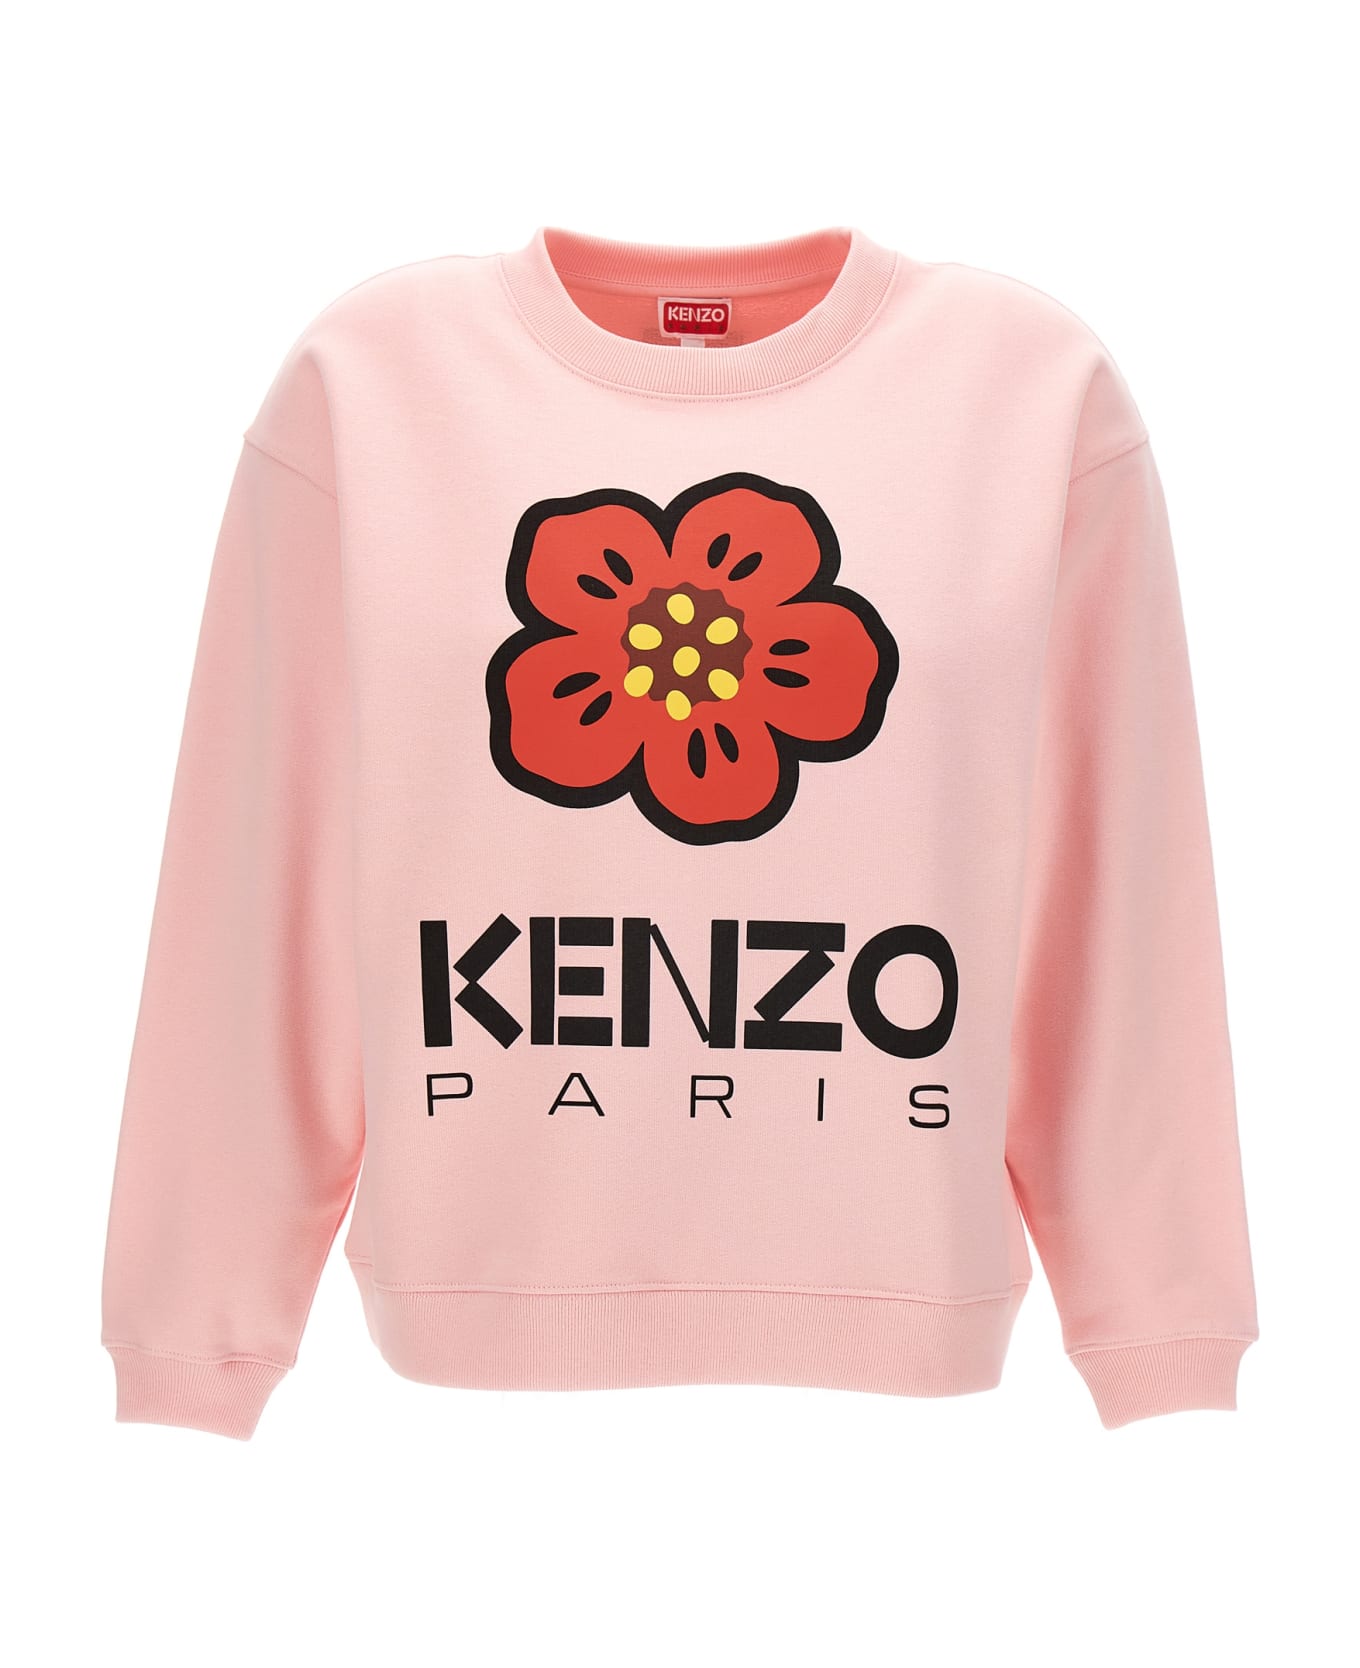 Kenzo Boke Boy Sweatshirt - Pink フリース